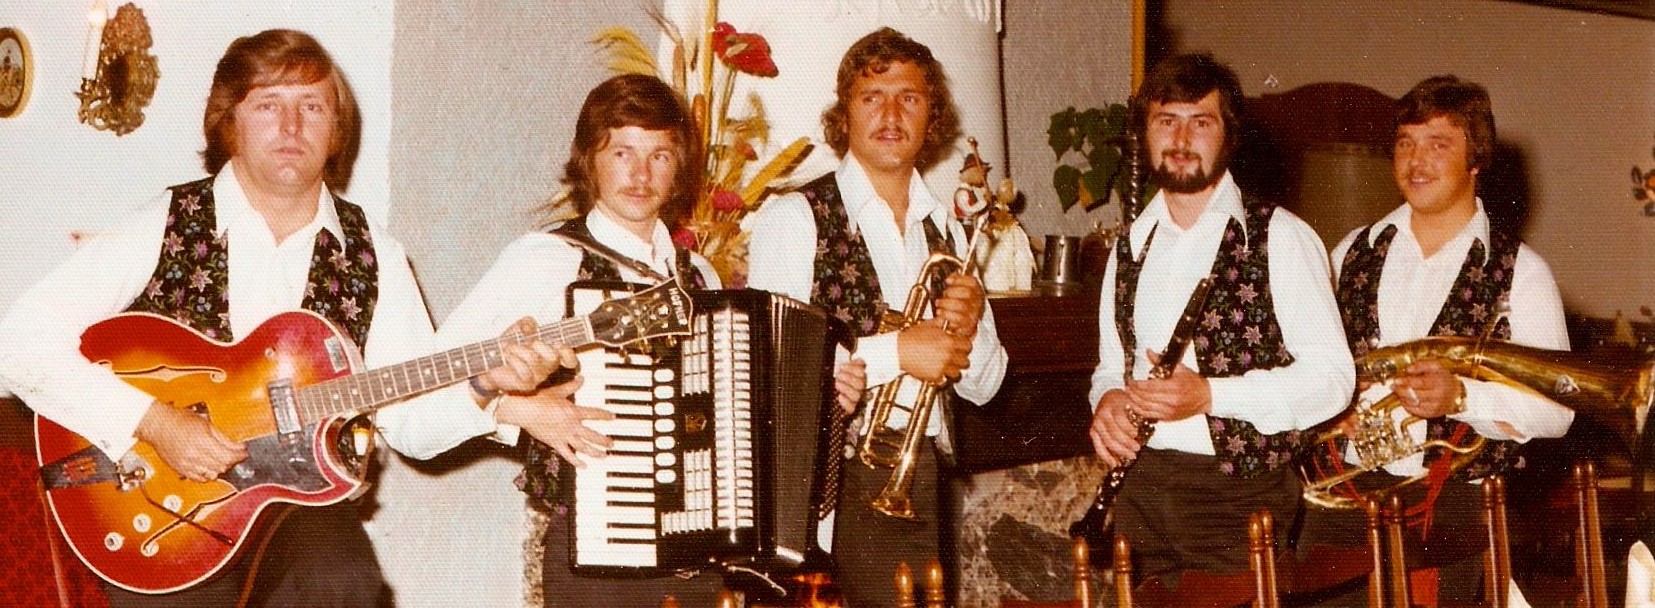 1975 Edelweiß Hans Leitner Hochzeit (2)